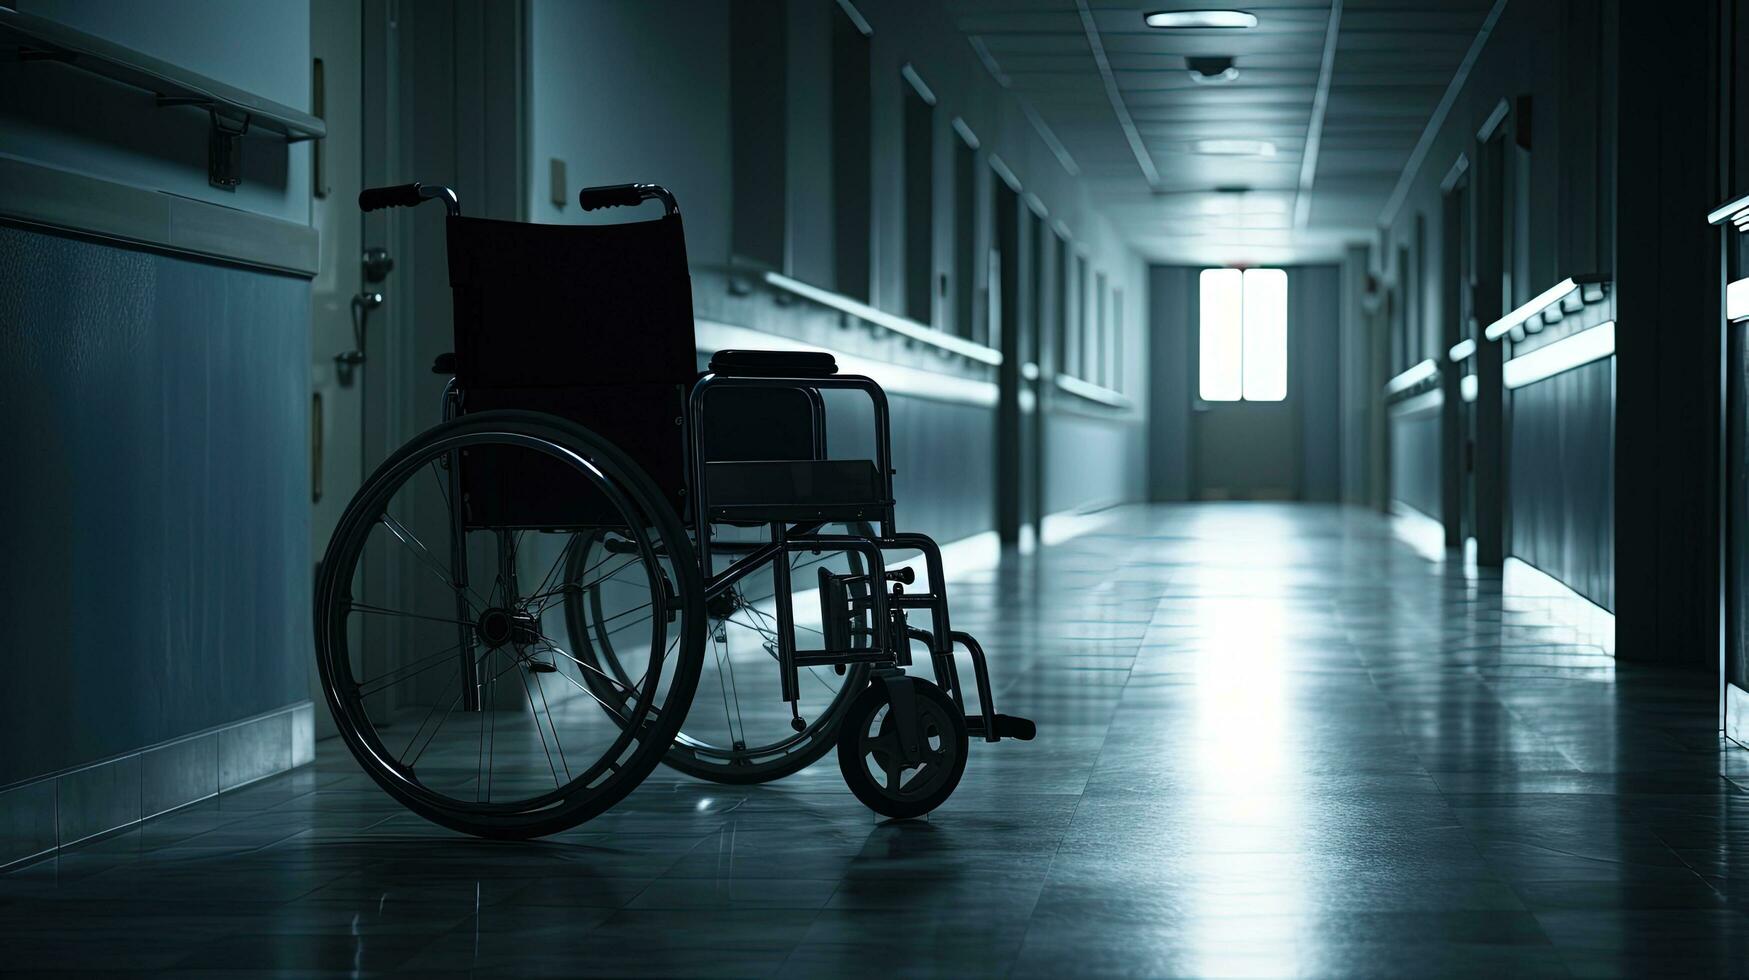 imagens do a desocupado cadeira de rodas dentro a esvaziar hospital corredor simbólico do doença ou isolamento. silhueta conceito foto